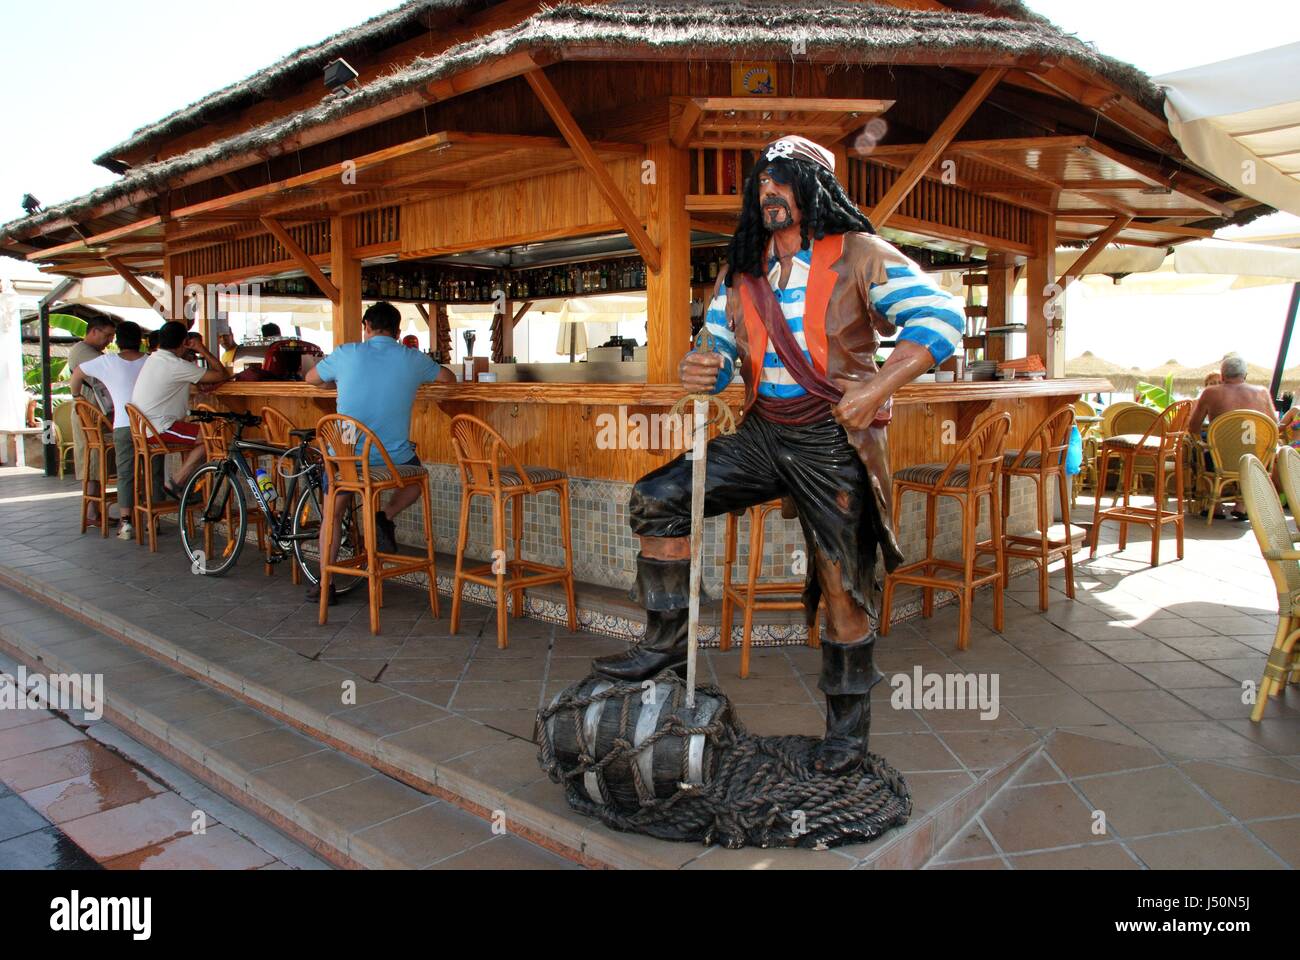 Les touristes à la détente d'un bar de plage le long de la promenade avec un pirate statue en premier plan, Torremolinos, Malaga, Andalousie, province de l'Ouest, Espagne Banque D'Images